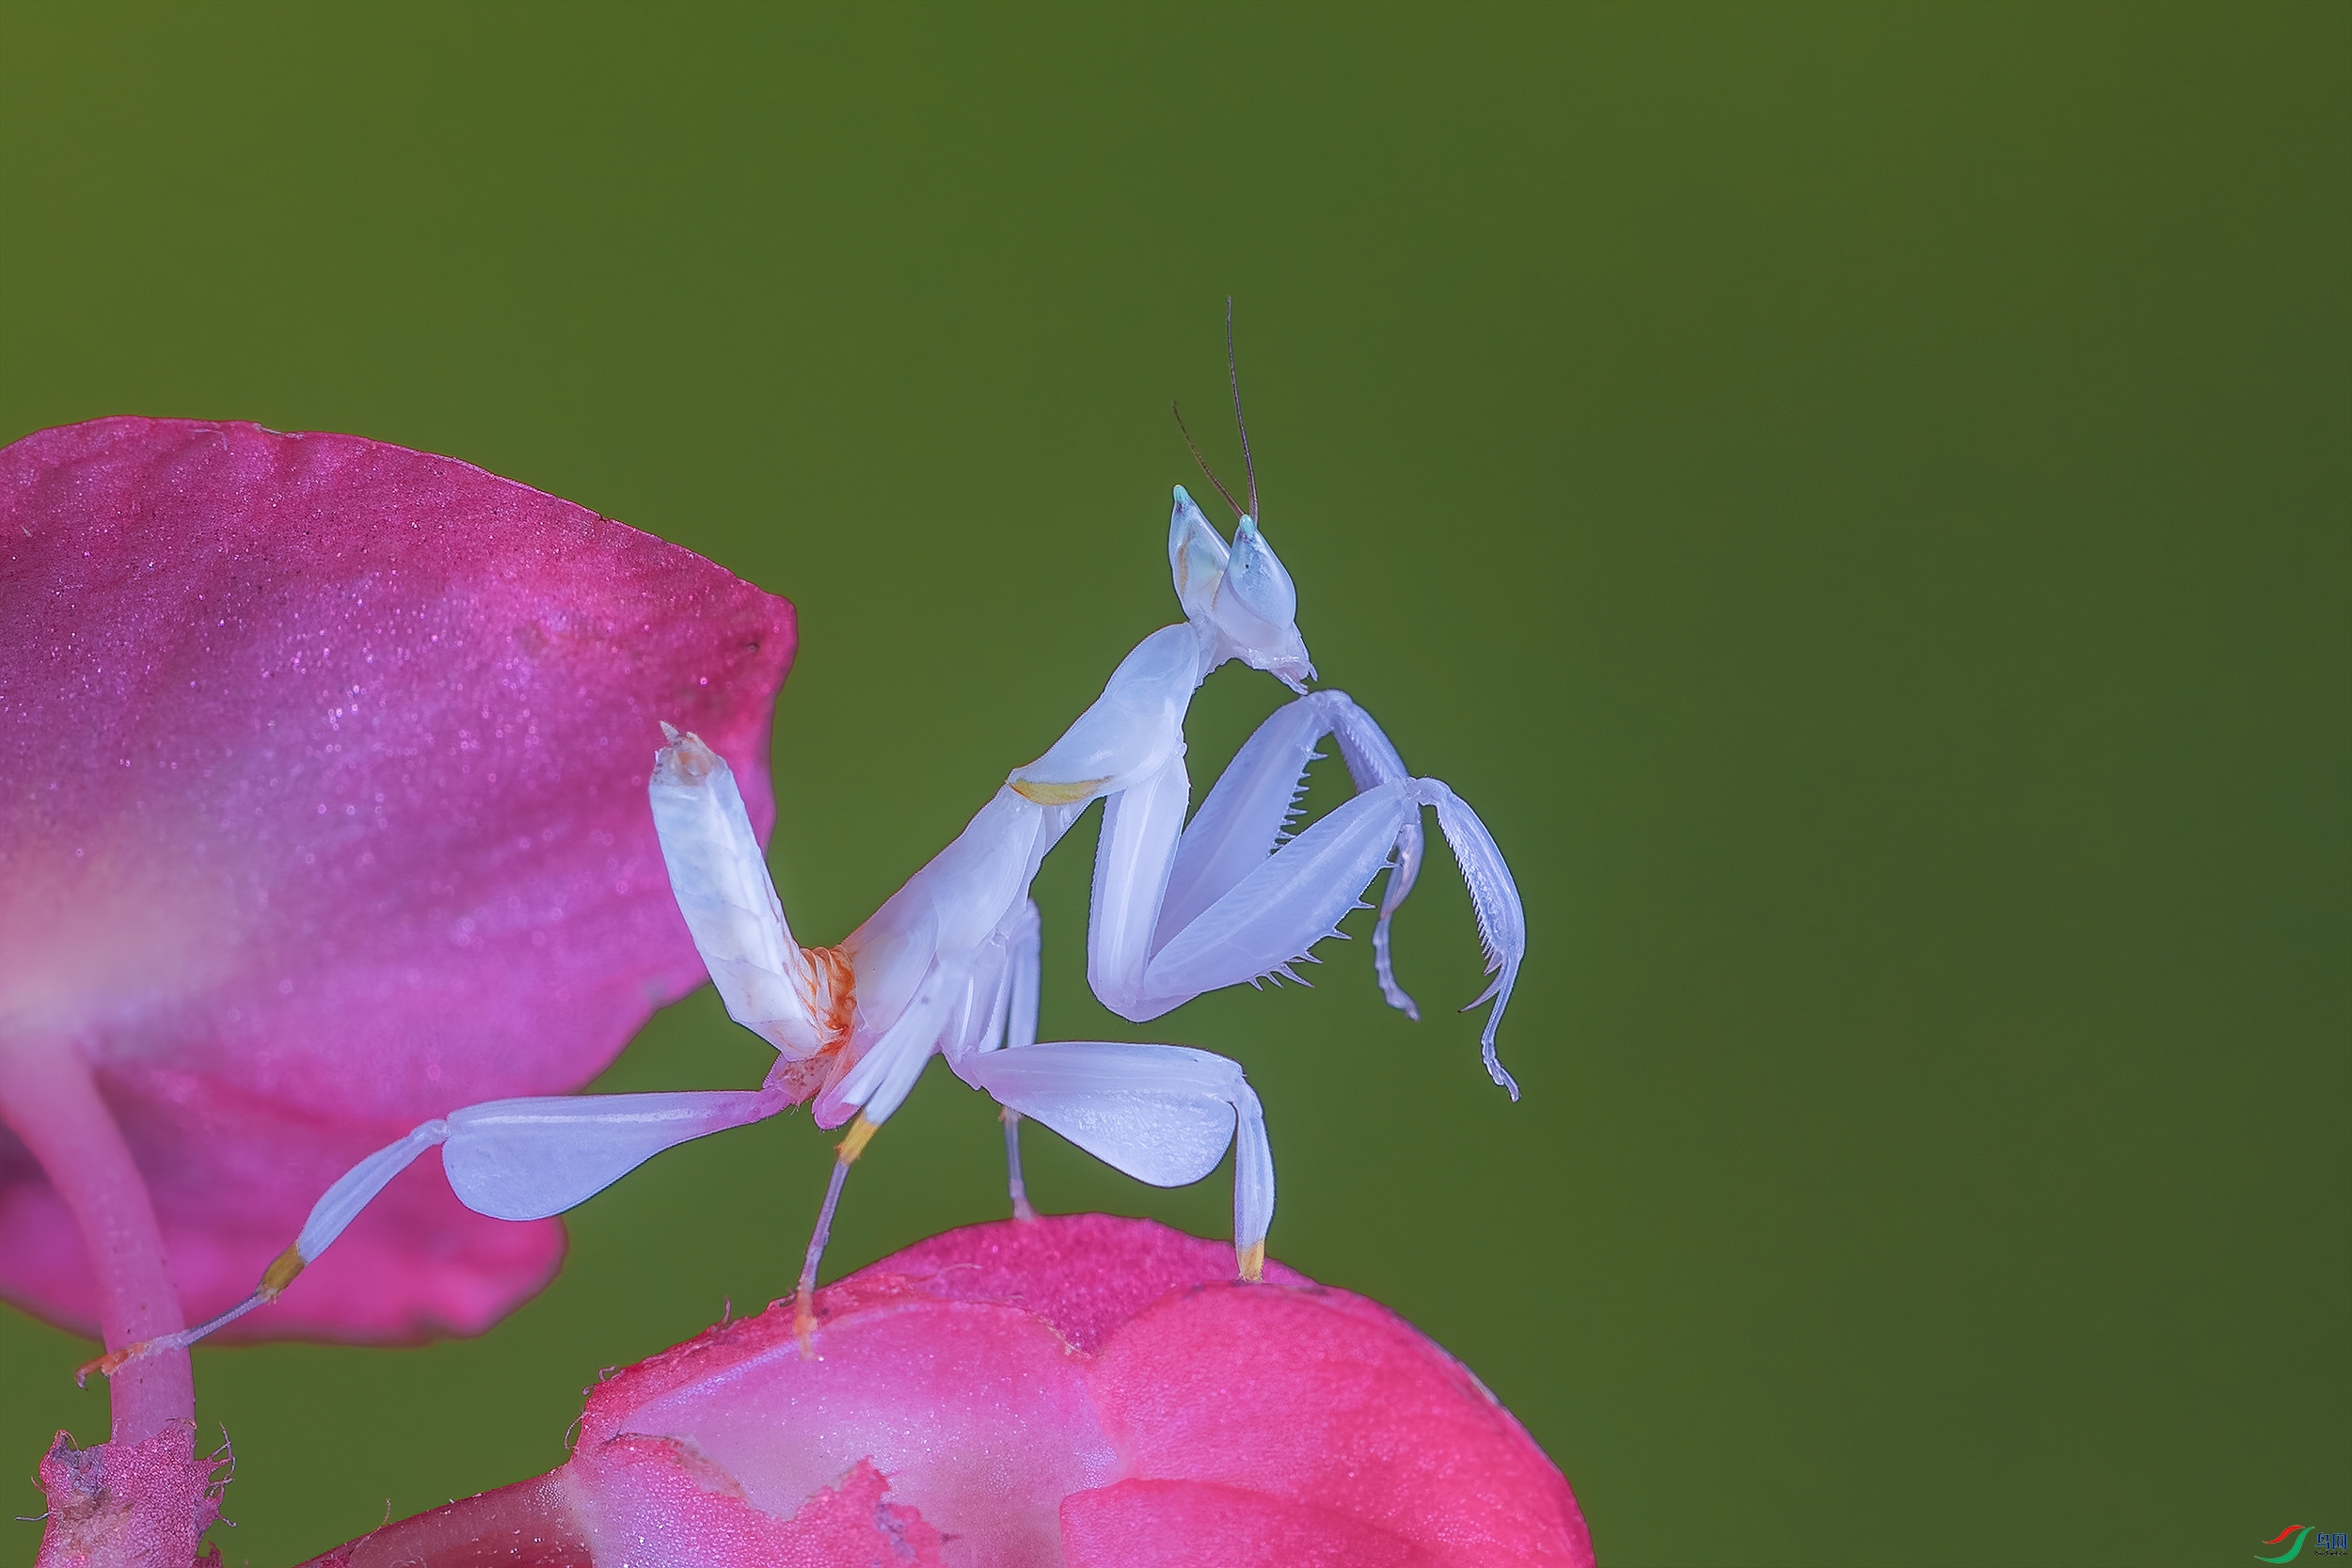 兰花螳螂图片摄影作品图片